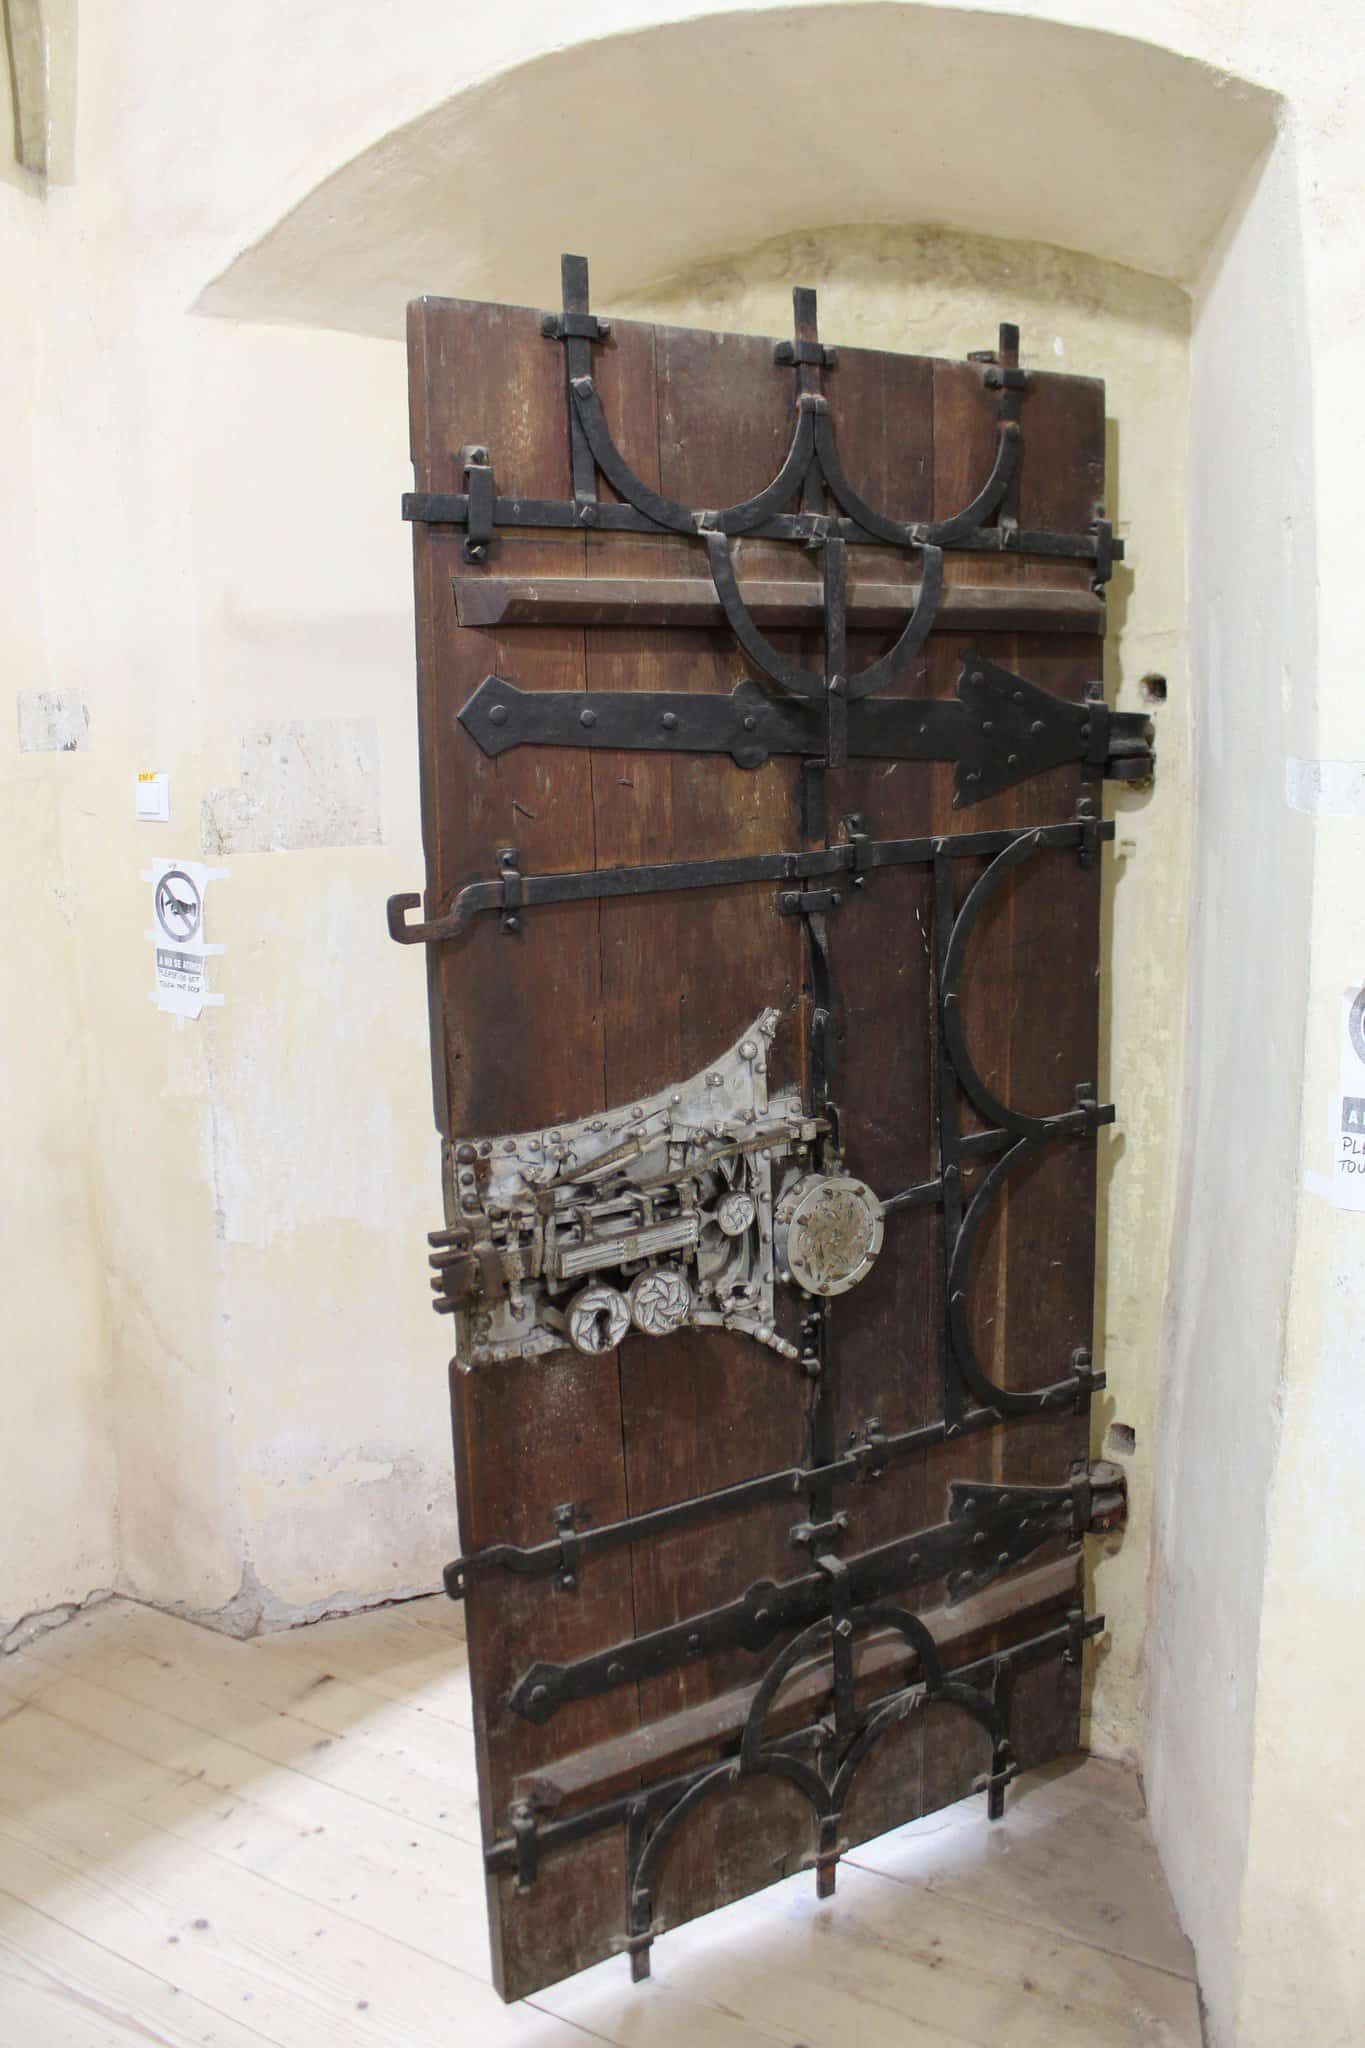 ușa bisericii fortificate din biertan, o bijuterie medievală care a uimit lumea (foto)